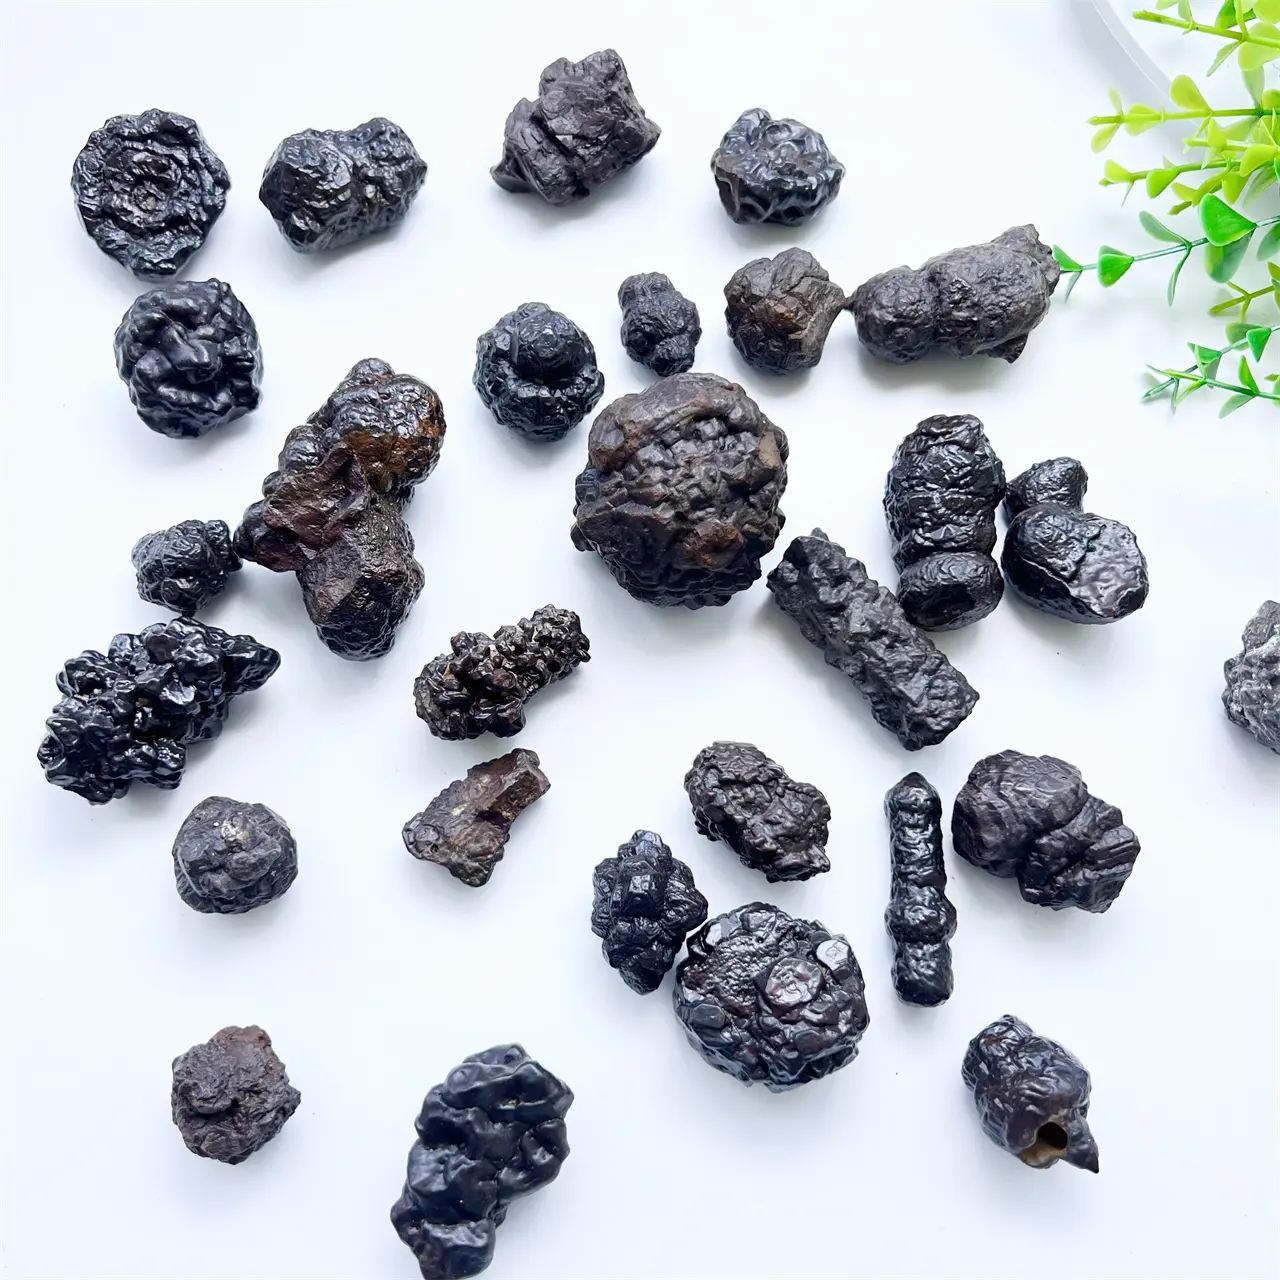 Kristal alami hitam karbonado batu mineral mentah batu spesimen penyembuhan batu ramalan Mesir batu